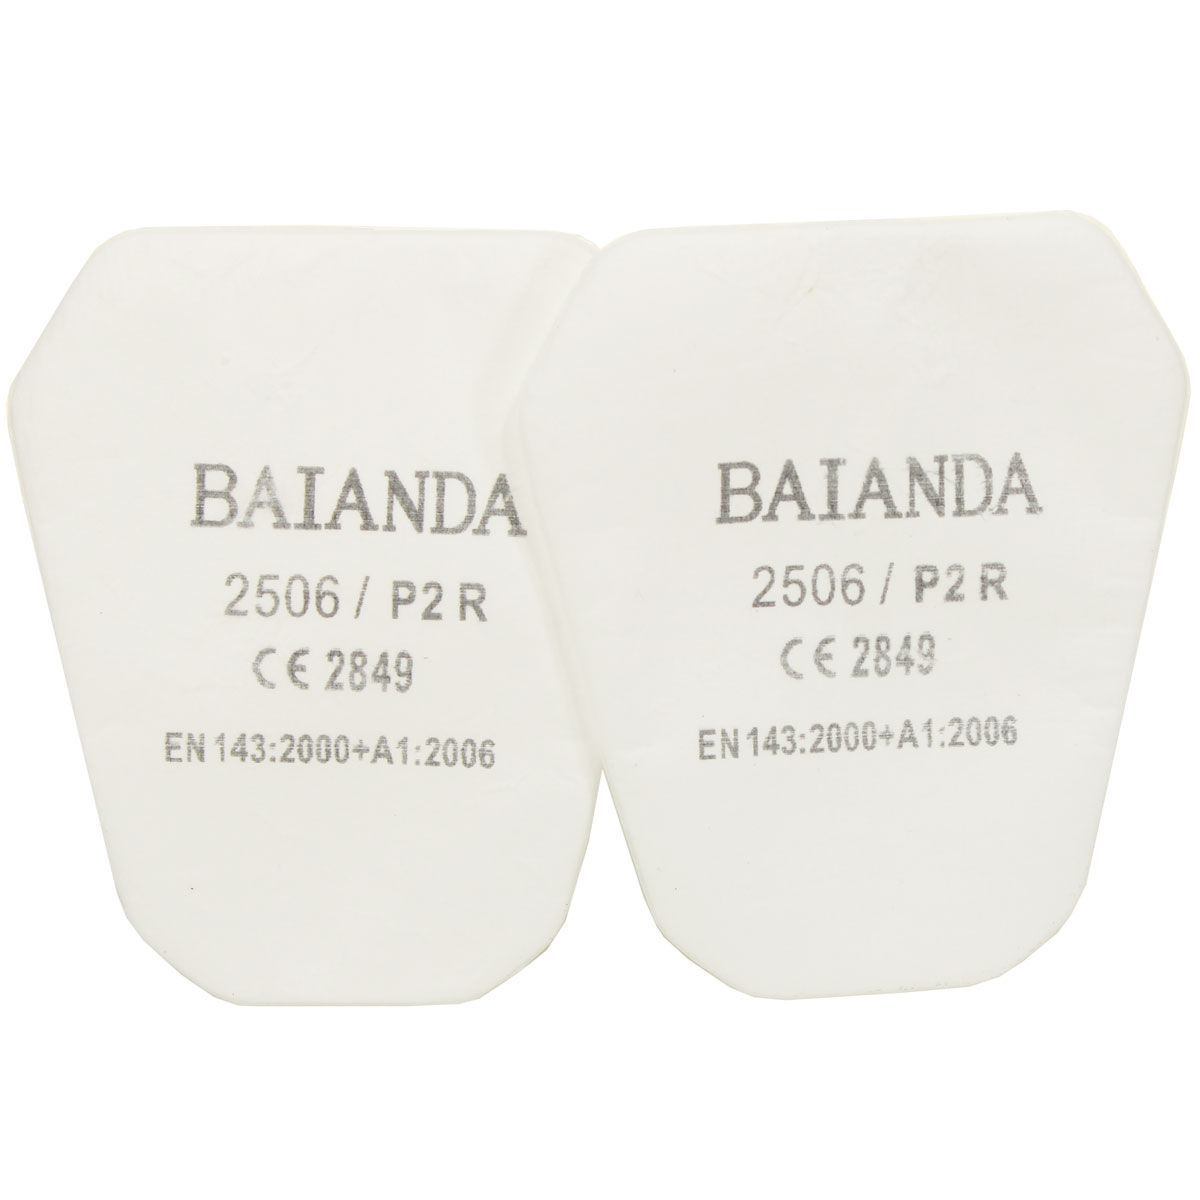 Комплект противоаэрозольных фильтров (предфильтров) BAIANDA 2506, класс P2R, 10 шт/уп держатели feq01 для противоаэрозольных фильтров baianda 1201 1203 2501 2502 2 шт уп